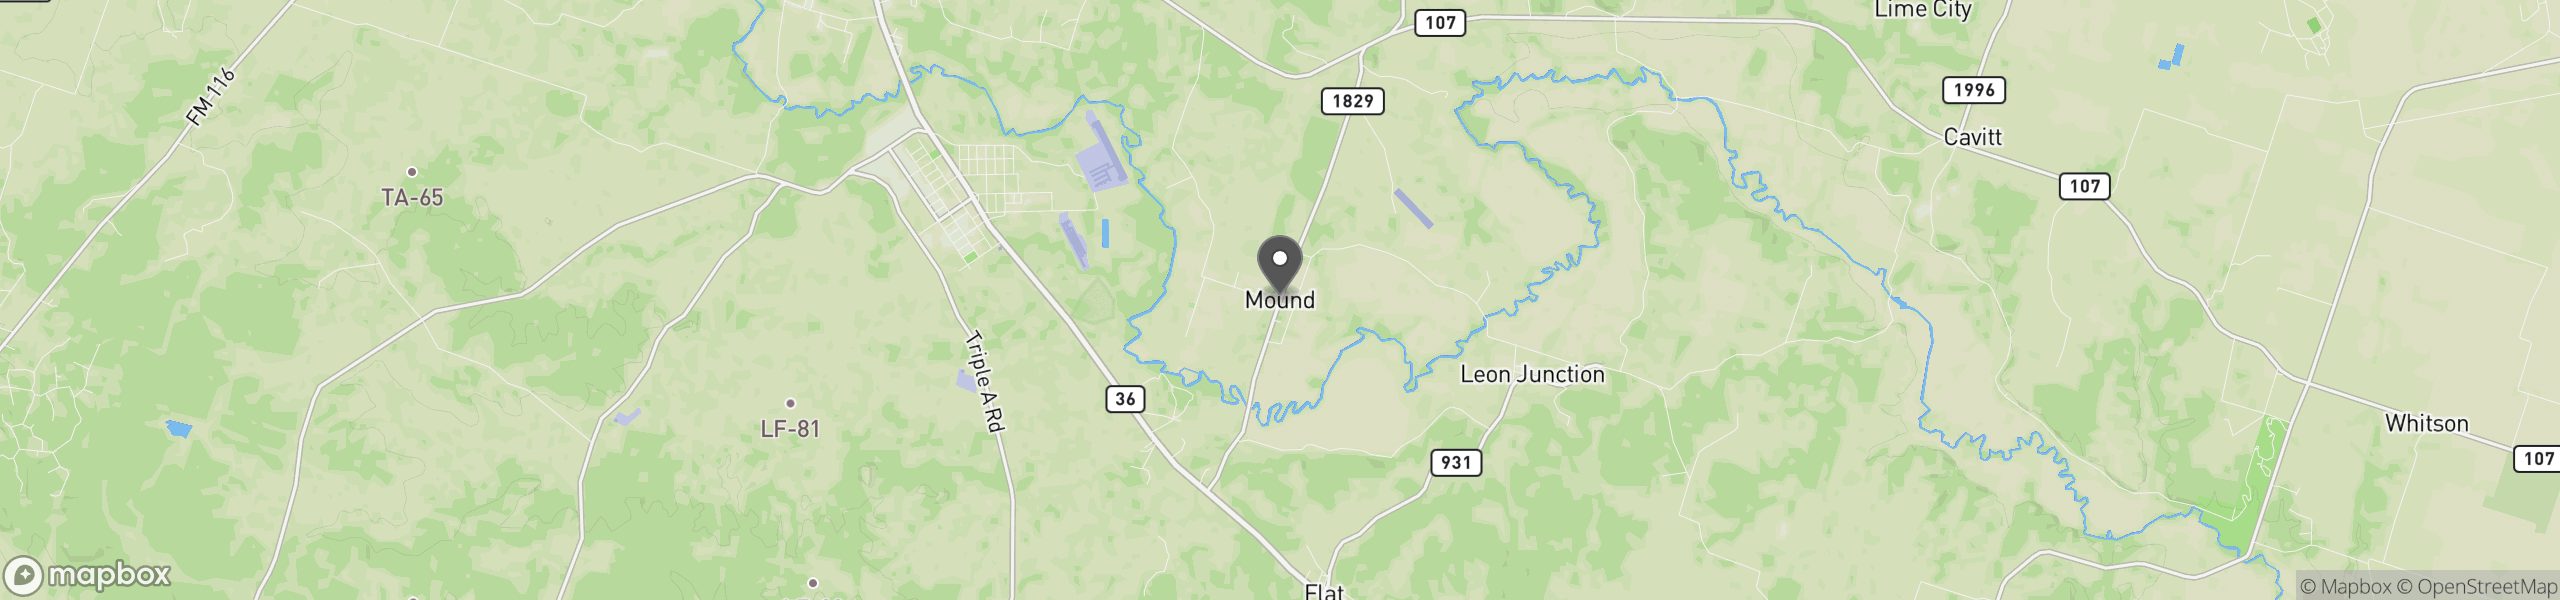 Mound, TX 76558